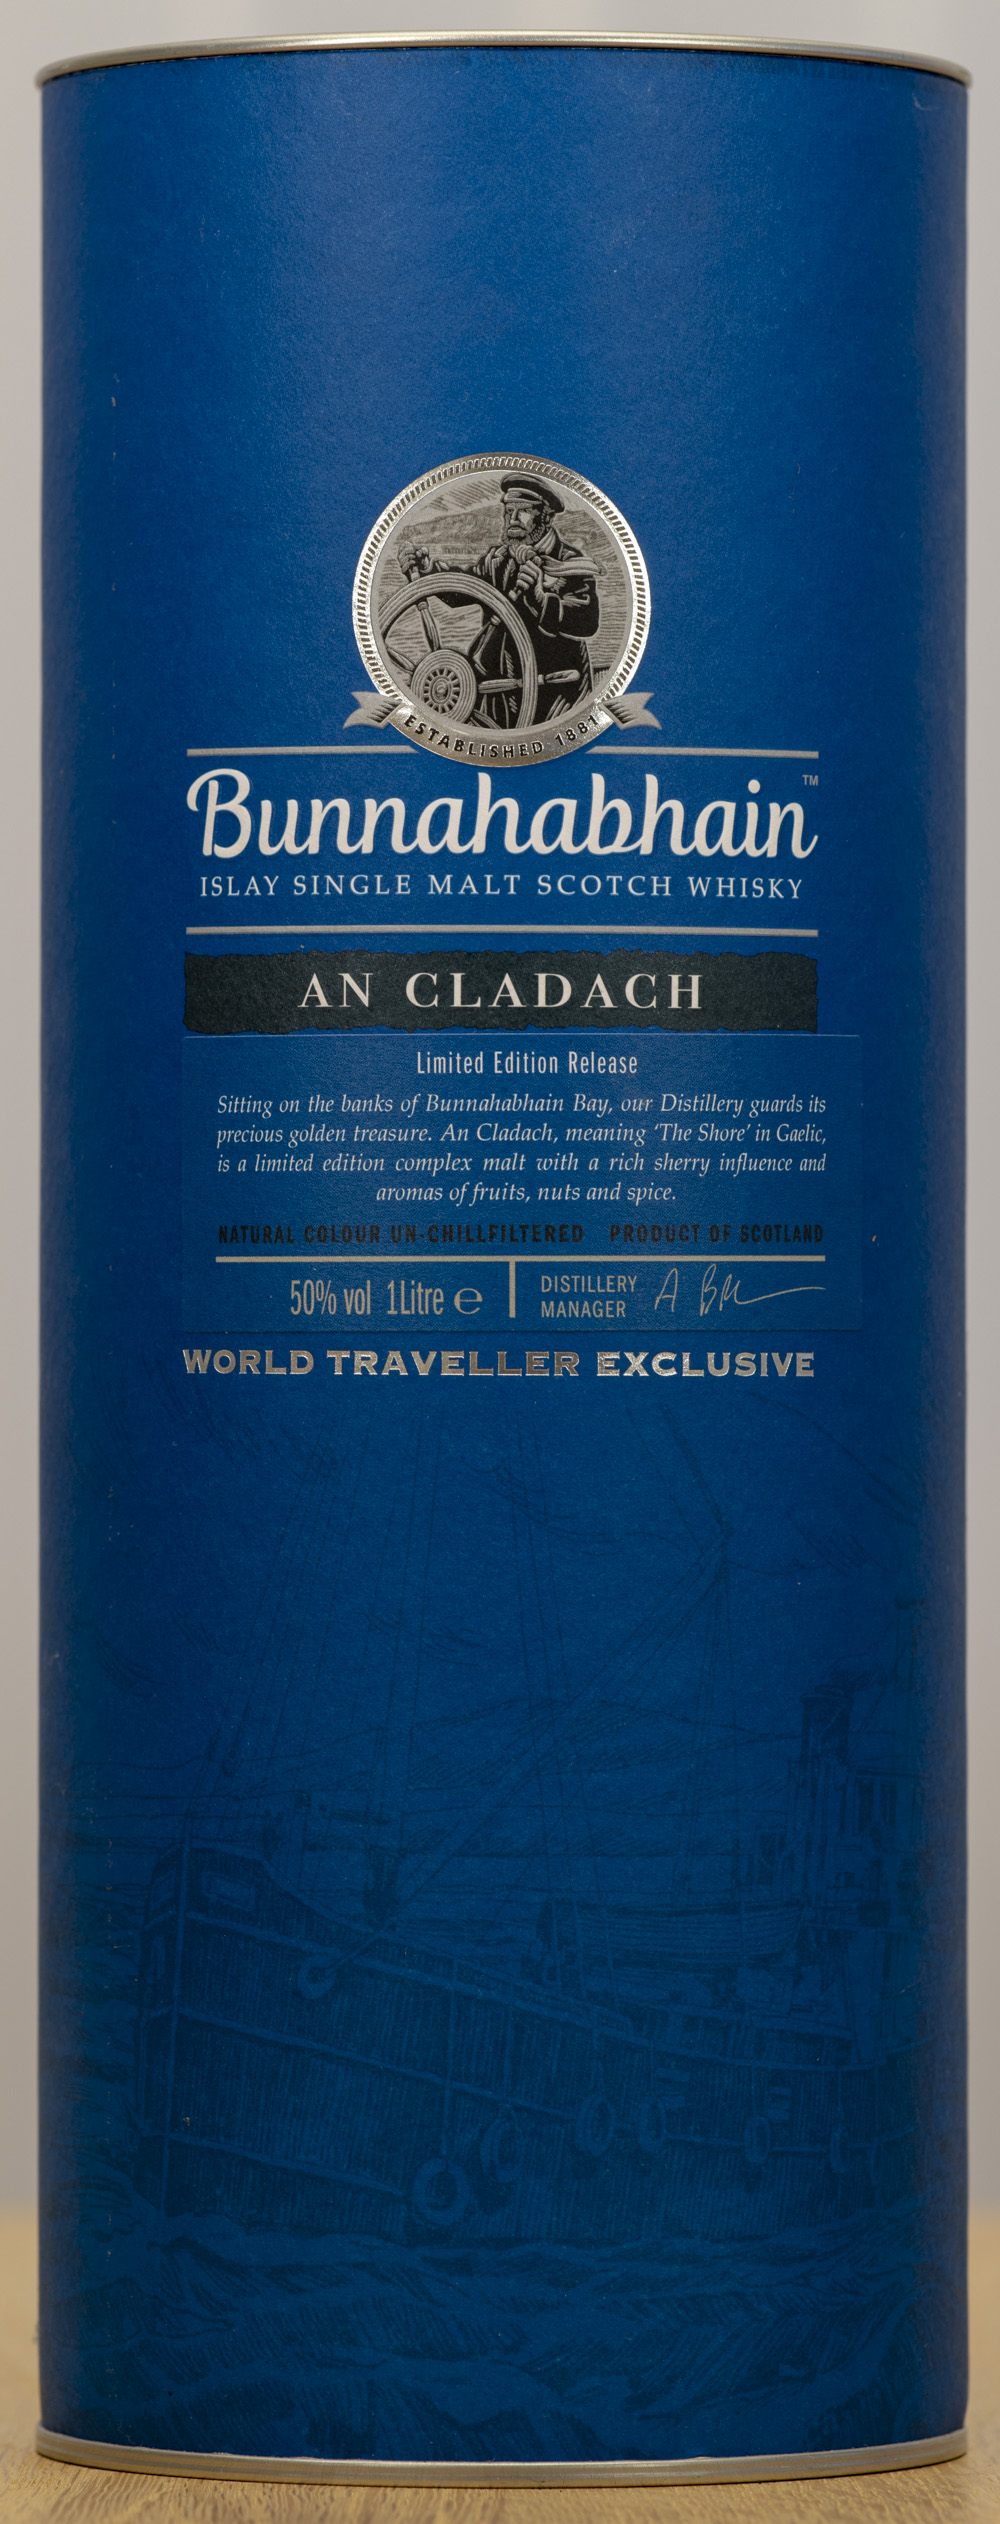 Billede: PHC_1536 - Bunnahabhain an Cladach - tube front.jpg